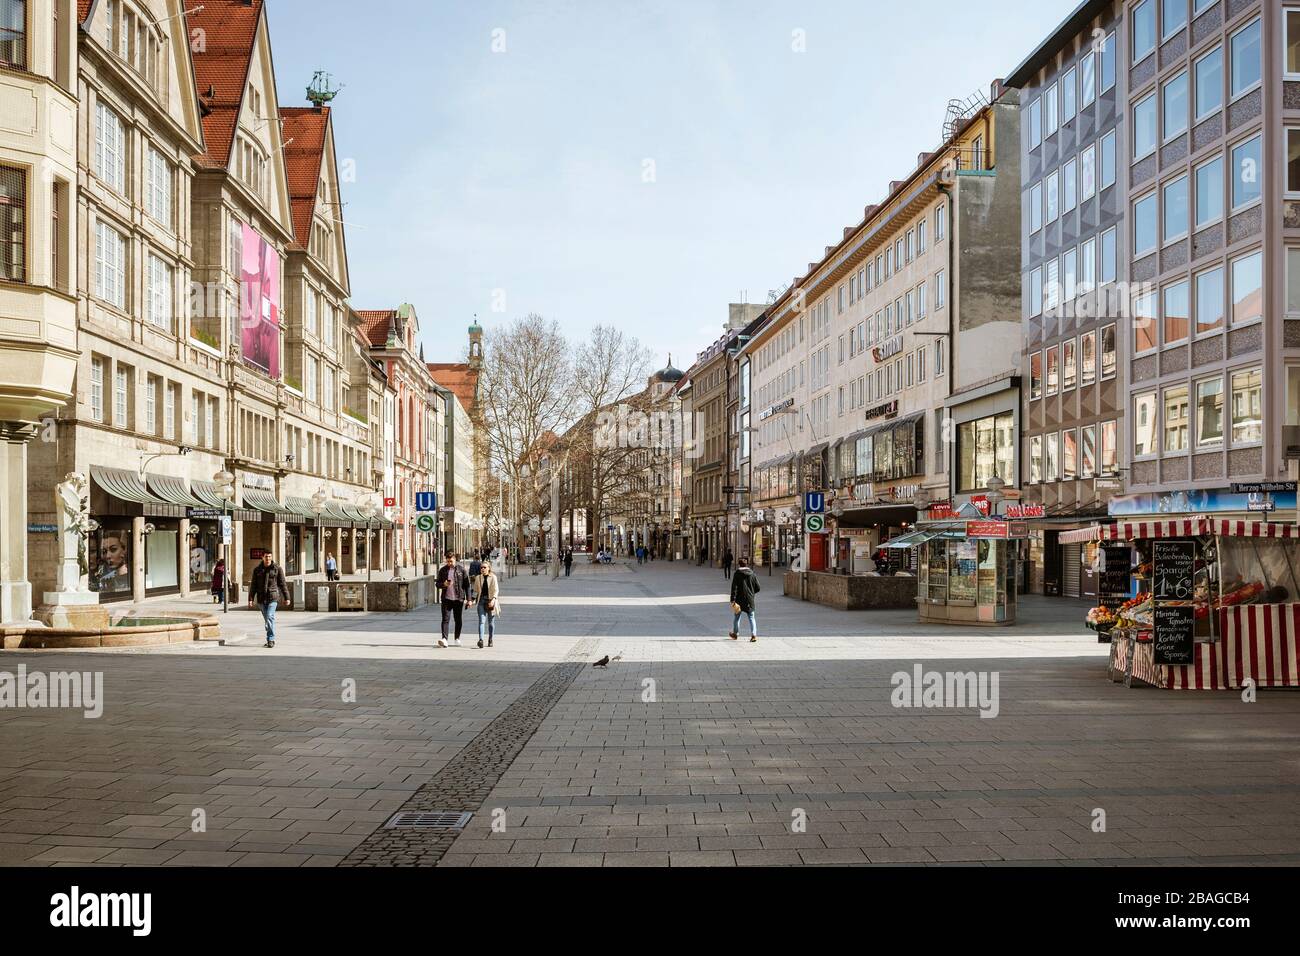 Baviera-Mucnich-Germania, 20. März 2020: Poche persone camminano su Kaufingerstrasse a Monaco, che è di solito affollata, ma rimane vuota a causa del nuovo coro Foto Stock